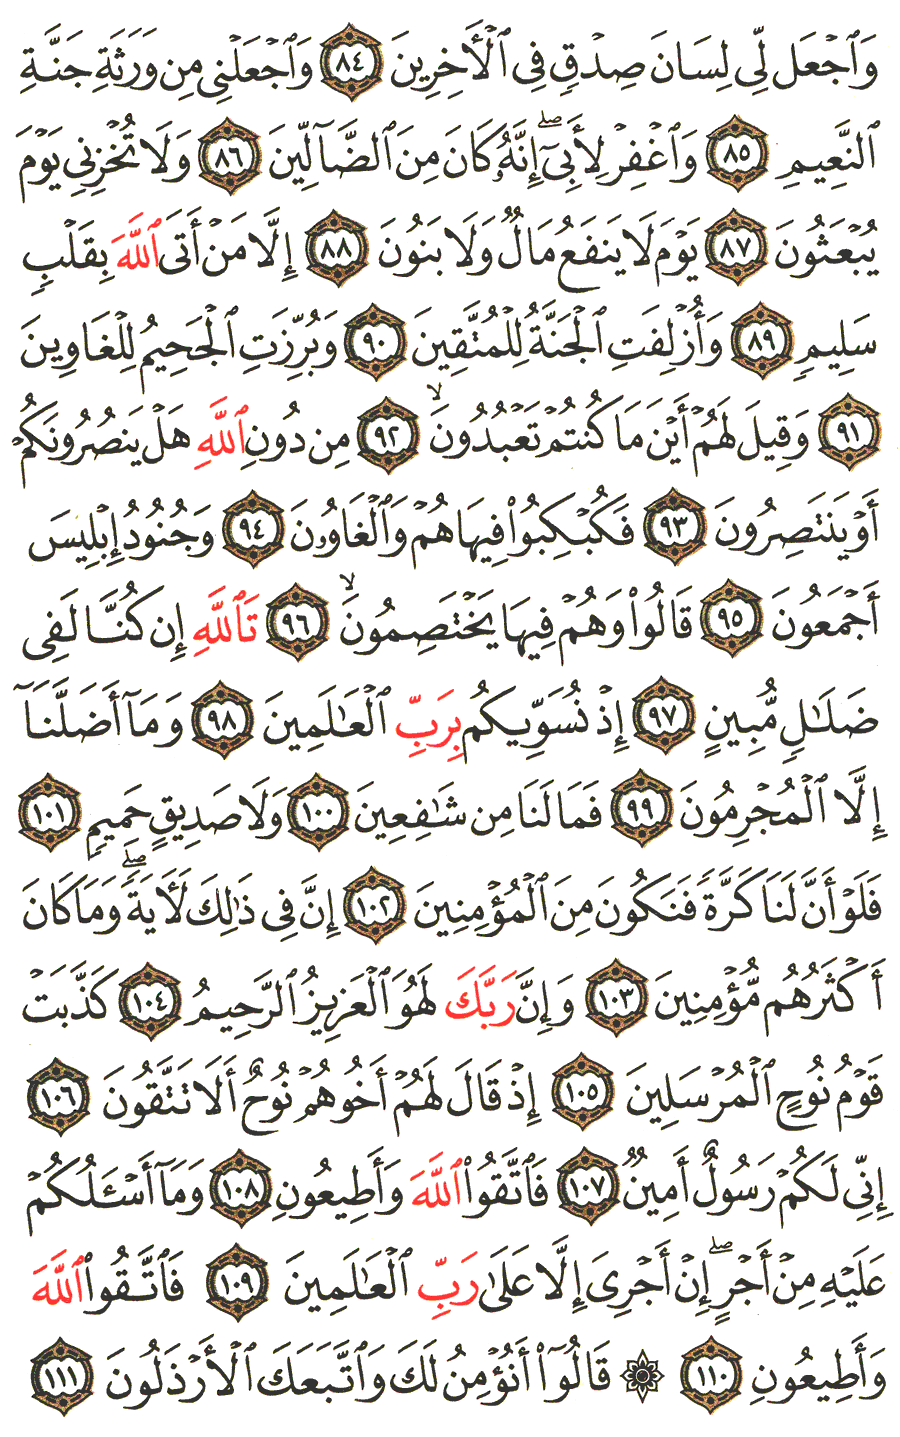 الصفحة 371 من القرآن الكريم